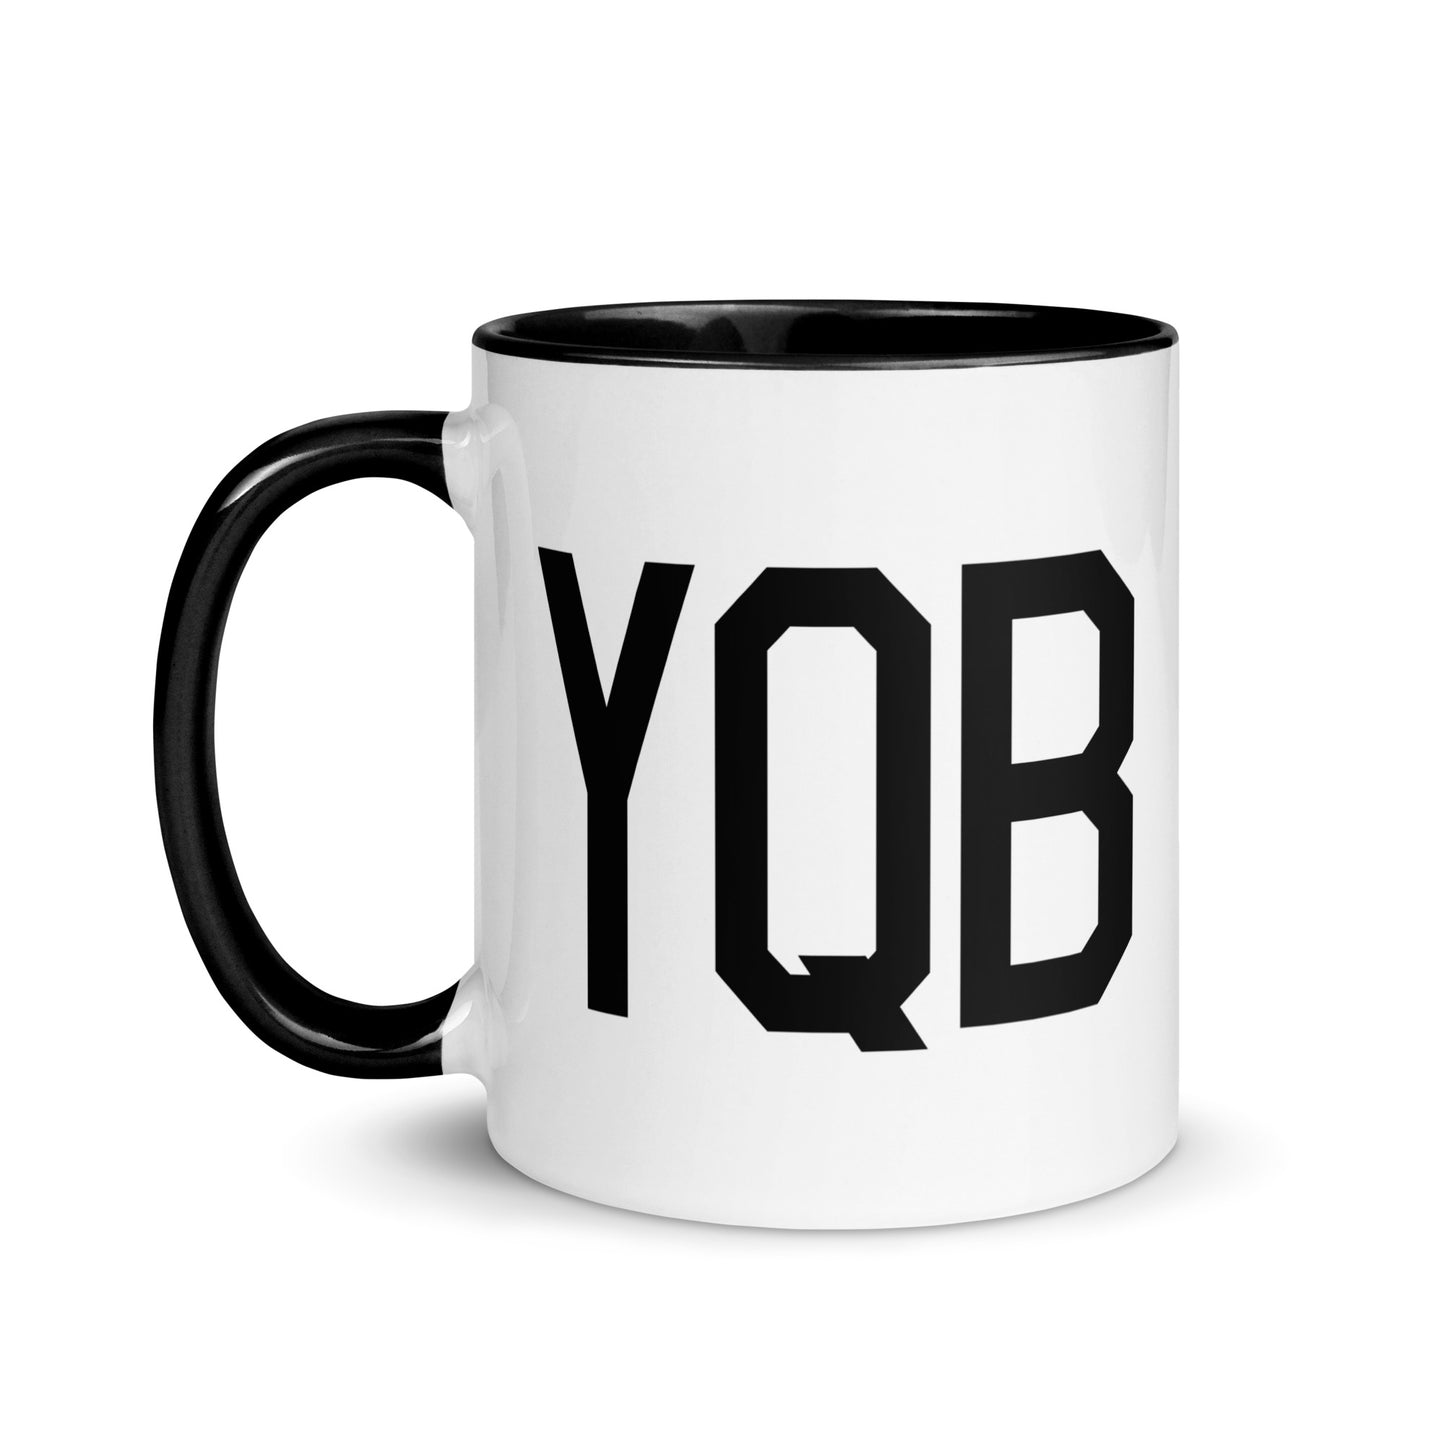 Aviation-Theme Coffee Mug - Black • YQB Quebec City • YHM Designs - Image 03